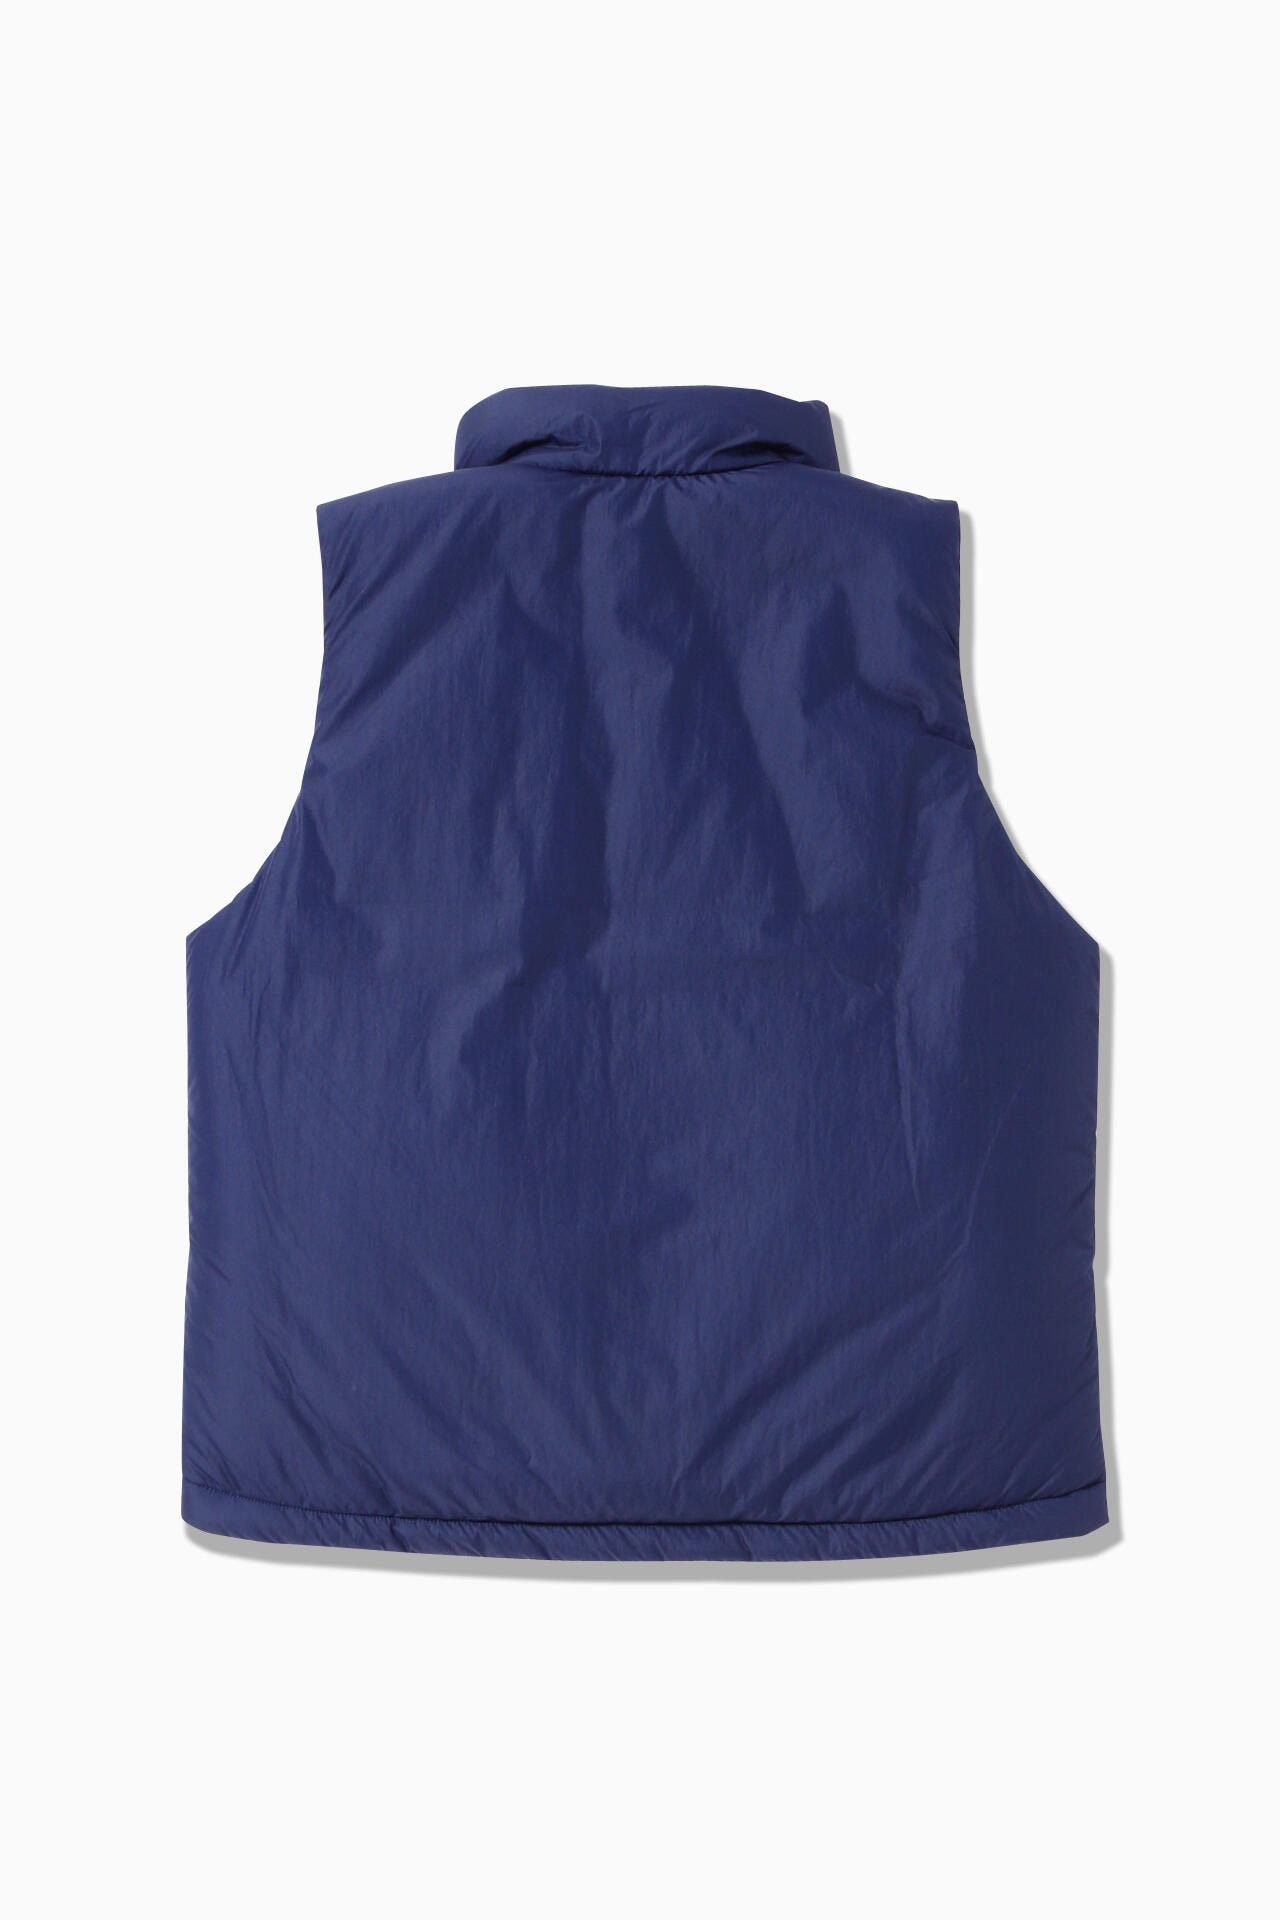 MAISON KITSUNÉ × and wander insulation vest